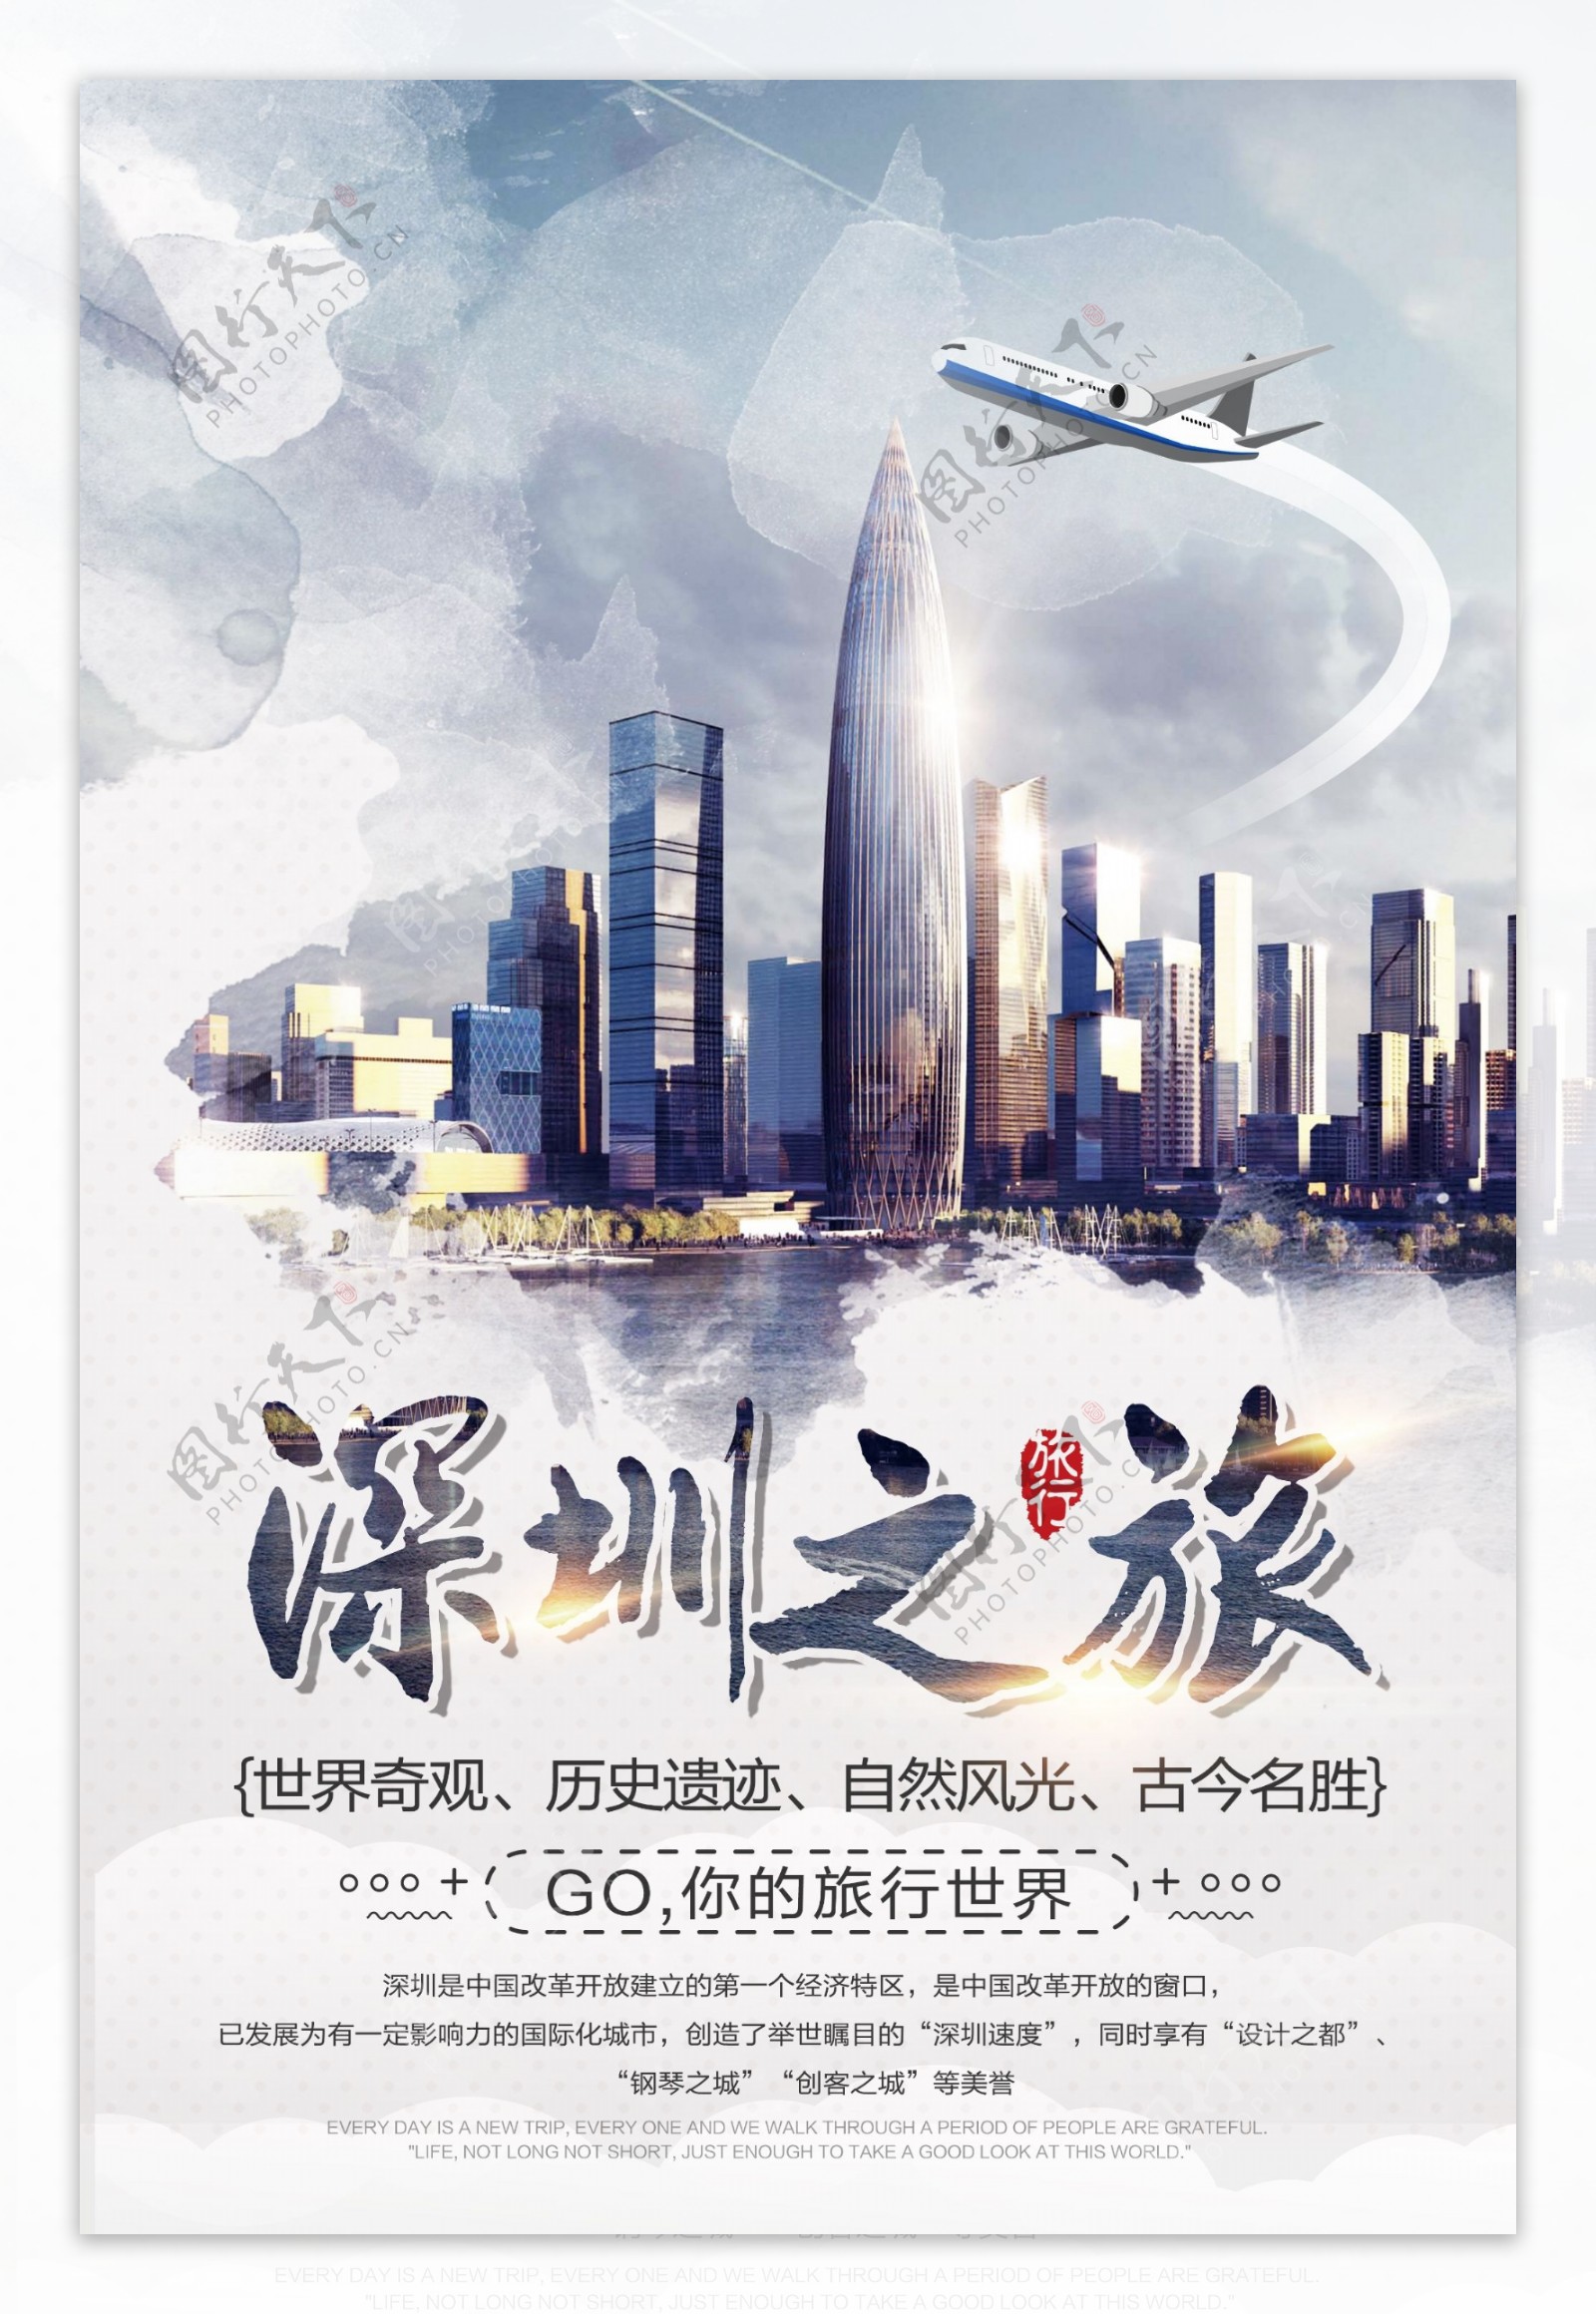 深圳之旅旅游景点促销宣传海报